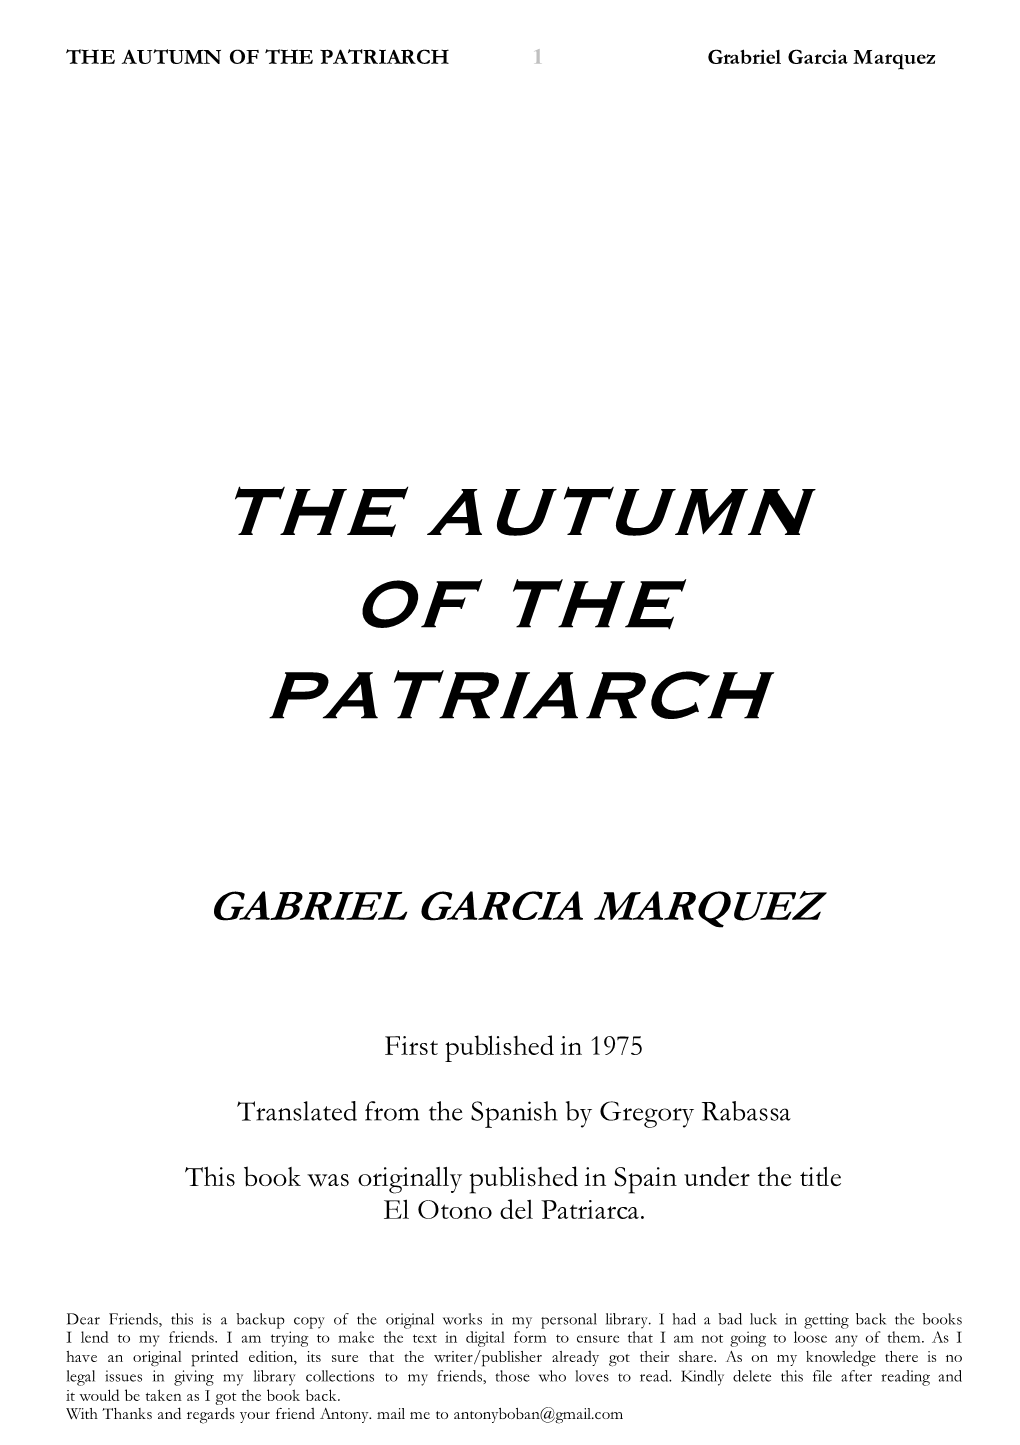 The Autumn of the Patriach-GABRIEL GARCIA MARQUEZ.Pdf